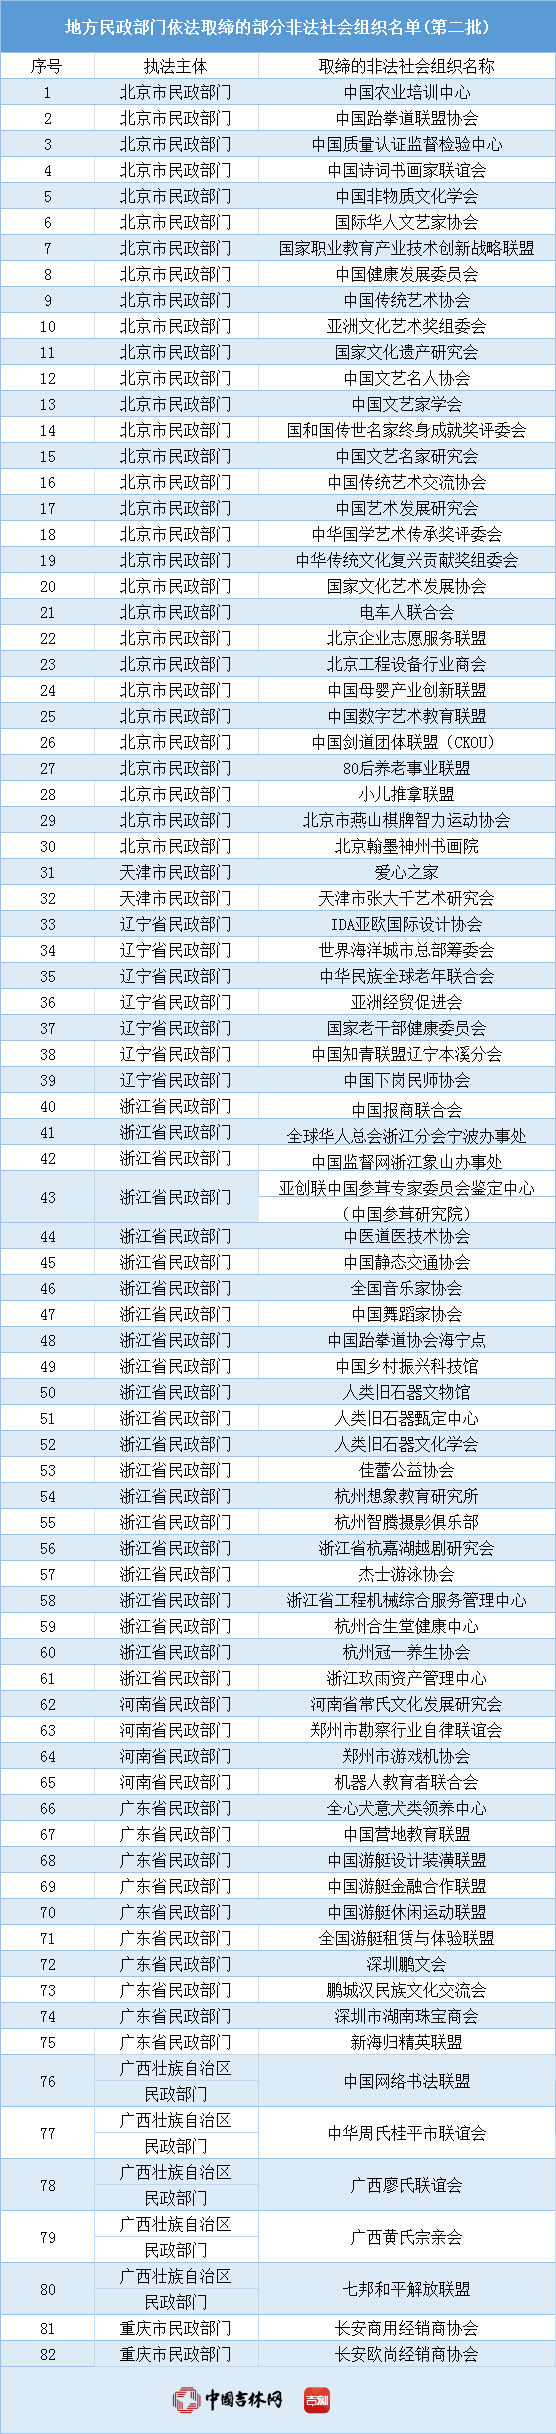 民政部公布82家已取缔非法社会组织名单